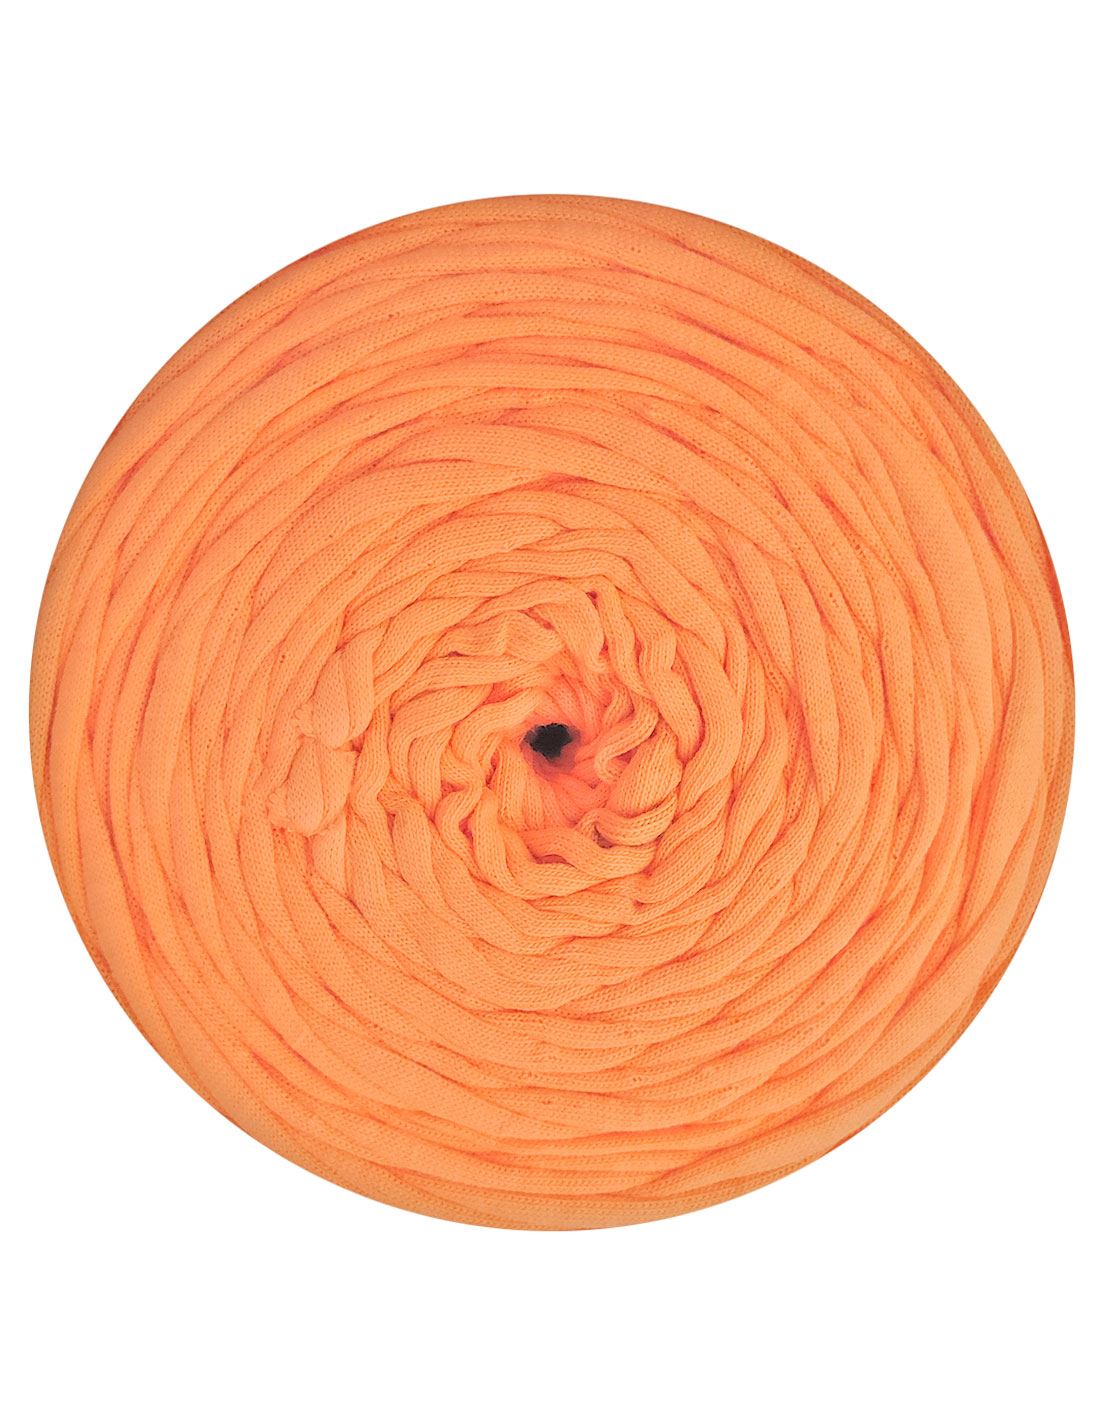 Tangerine orange t-shirt yarn by Rescue Yarn (100-120m)